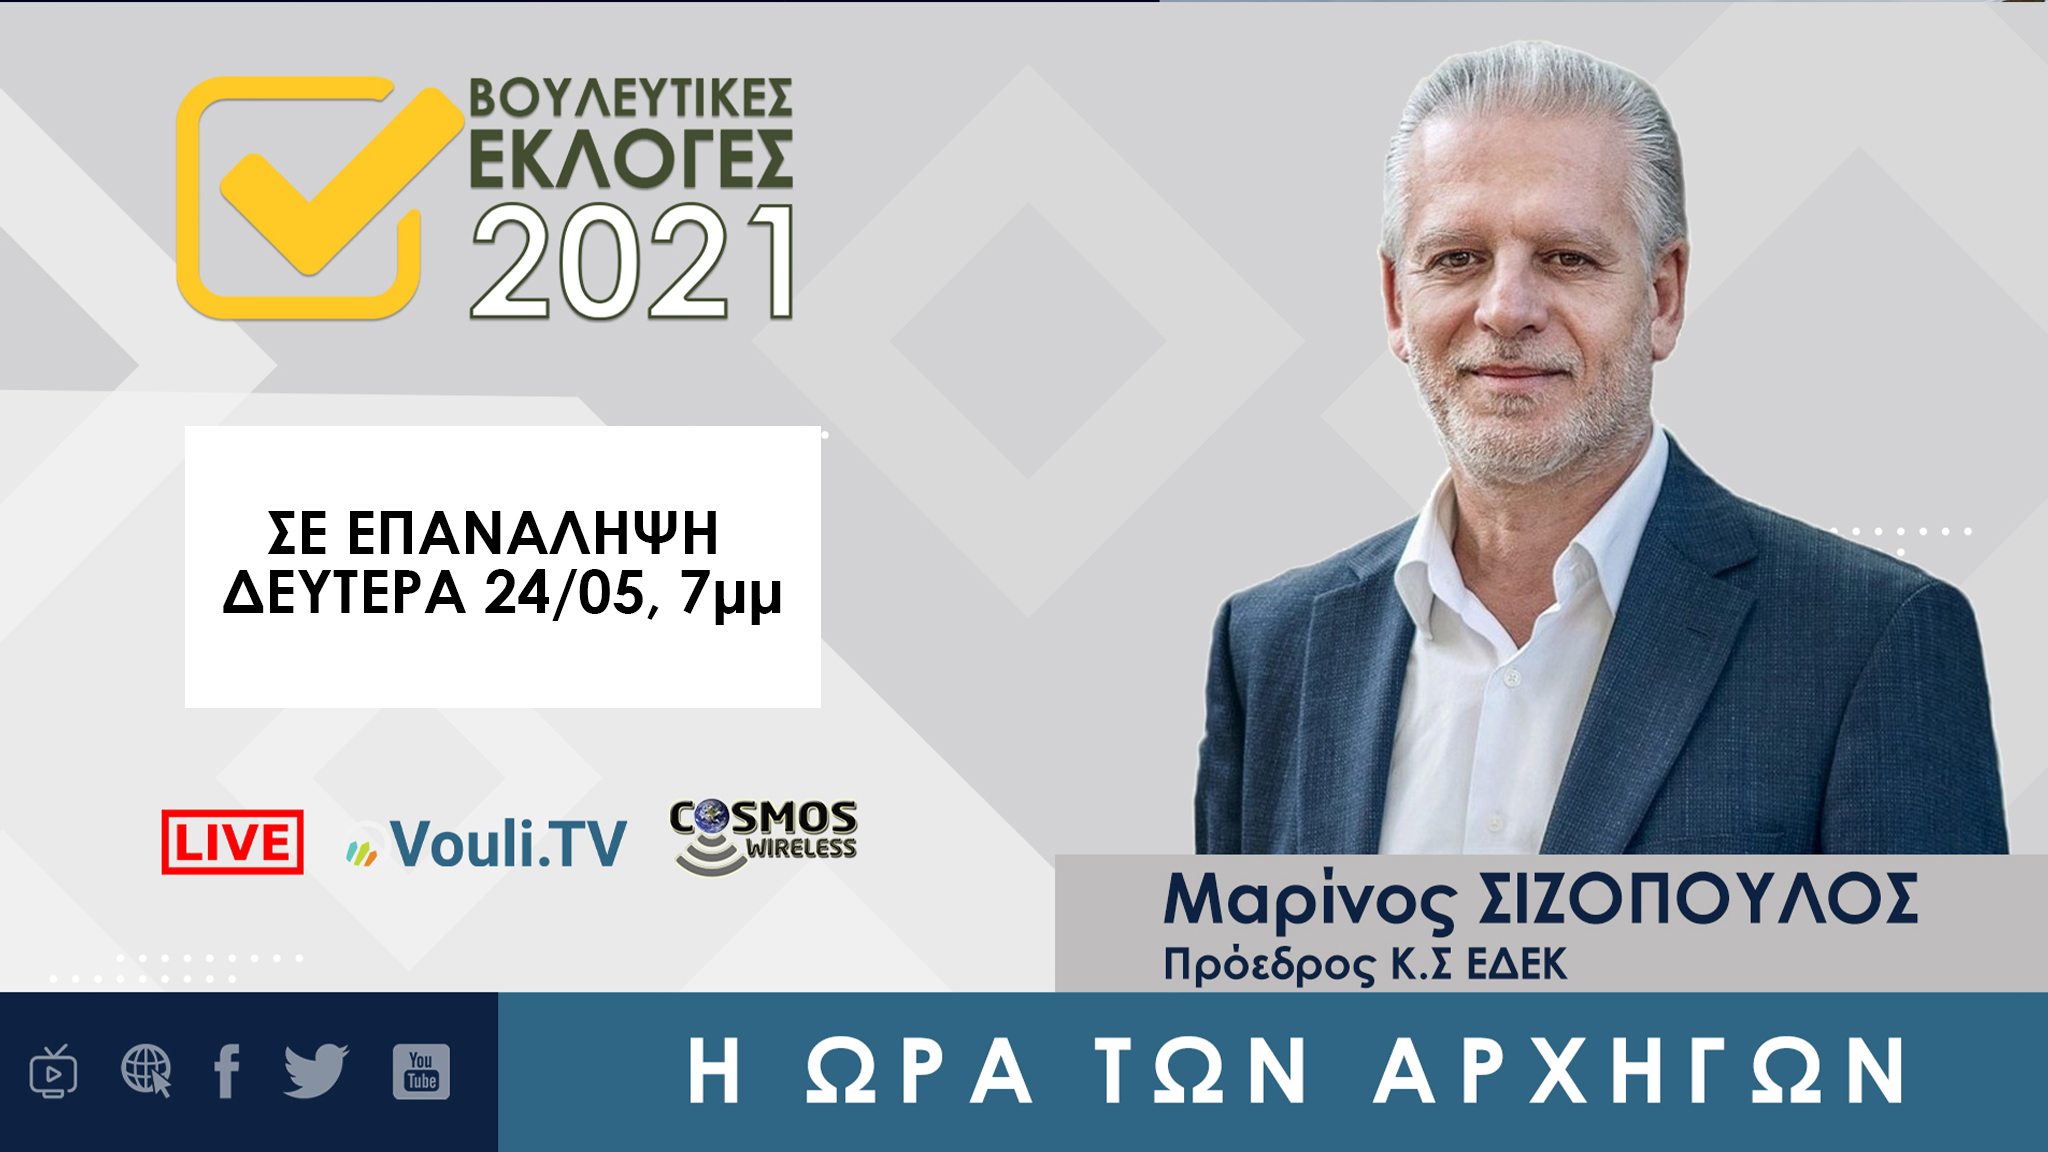 Σε επανάληψη | Εκλογές 2021 - Μαρίνος Σιζόπουλος Δευτέρα 24/05/2021, 7μμ